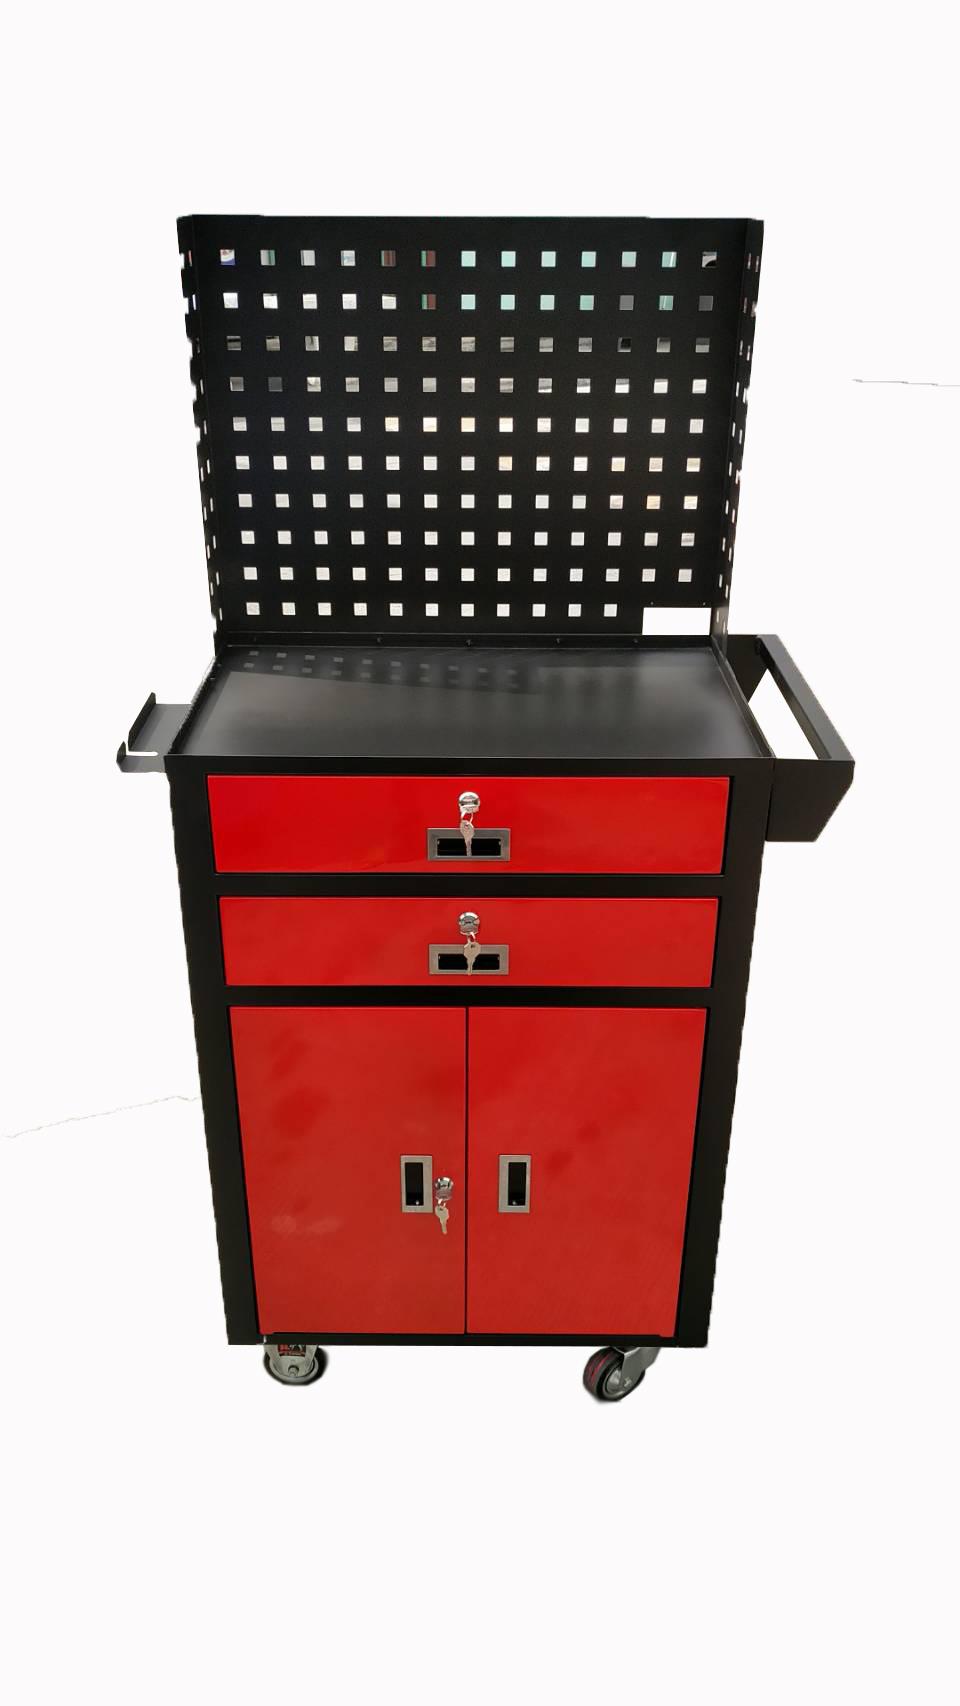 ตู้เครื่องมือช่างเล็ก  ,ตู้  ตู้  ตู้  ตู้  ตู้ ตู้เครื่องมือช่างเล็ก ตู้เครื่องมือช่าง ตู้  ตู้  ตู้  ตู้  ตู้ ,Y2K,Materials Handling/Cabinets/Tool Cabinet